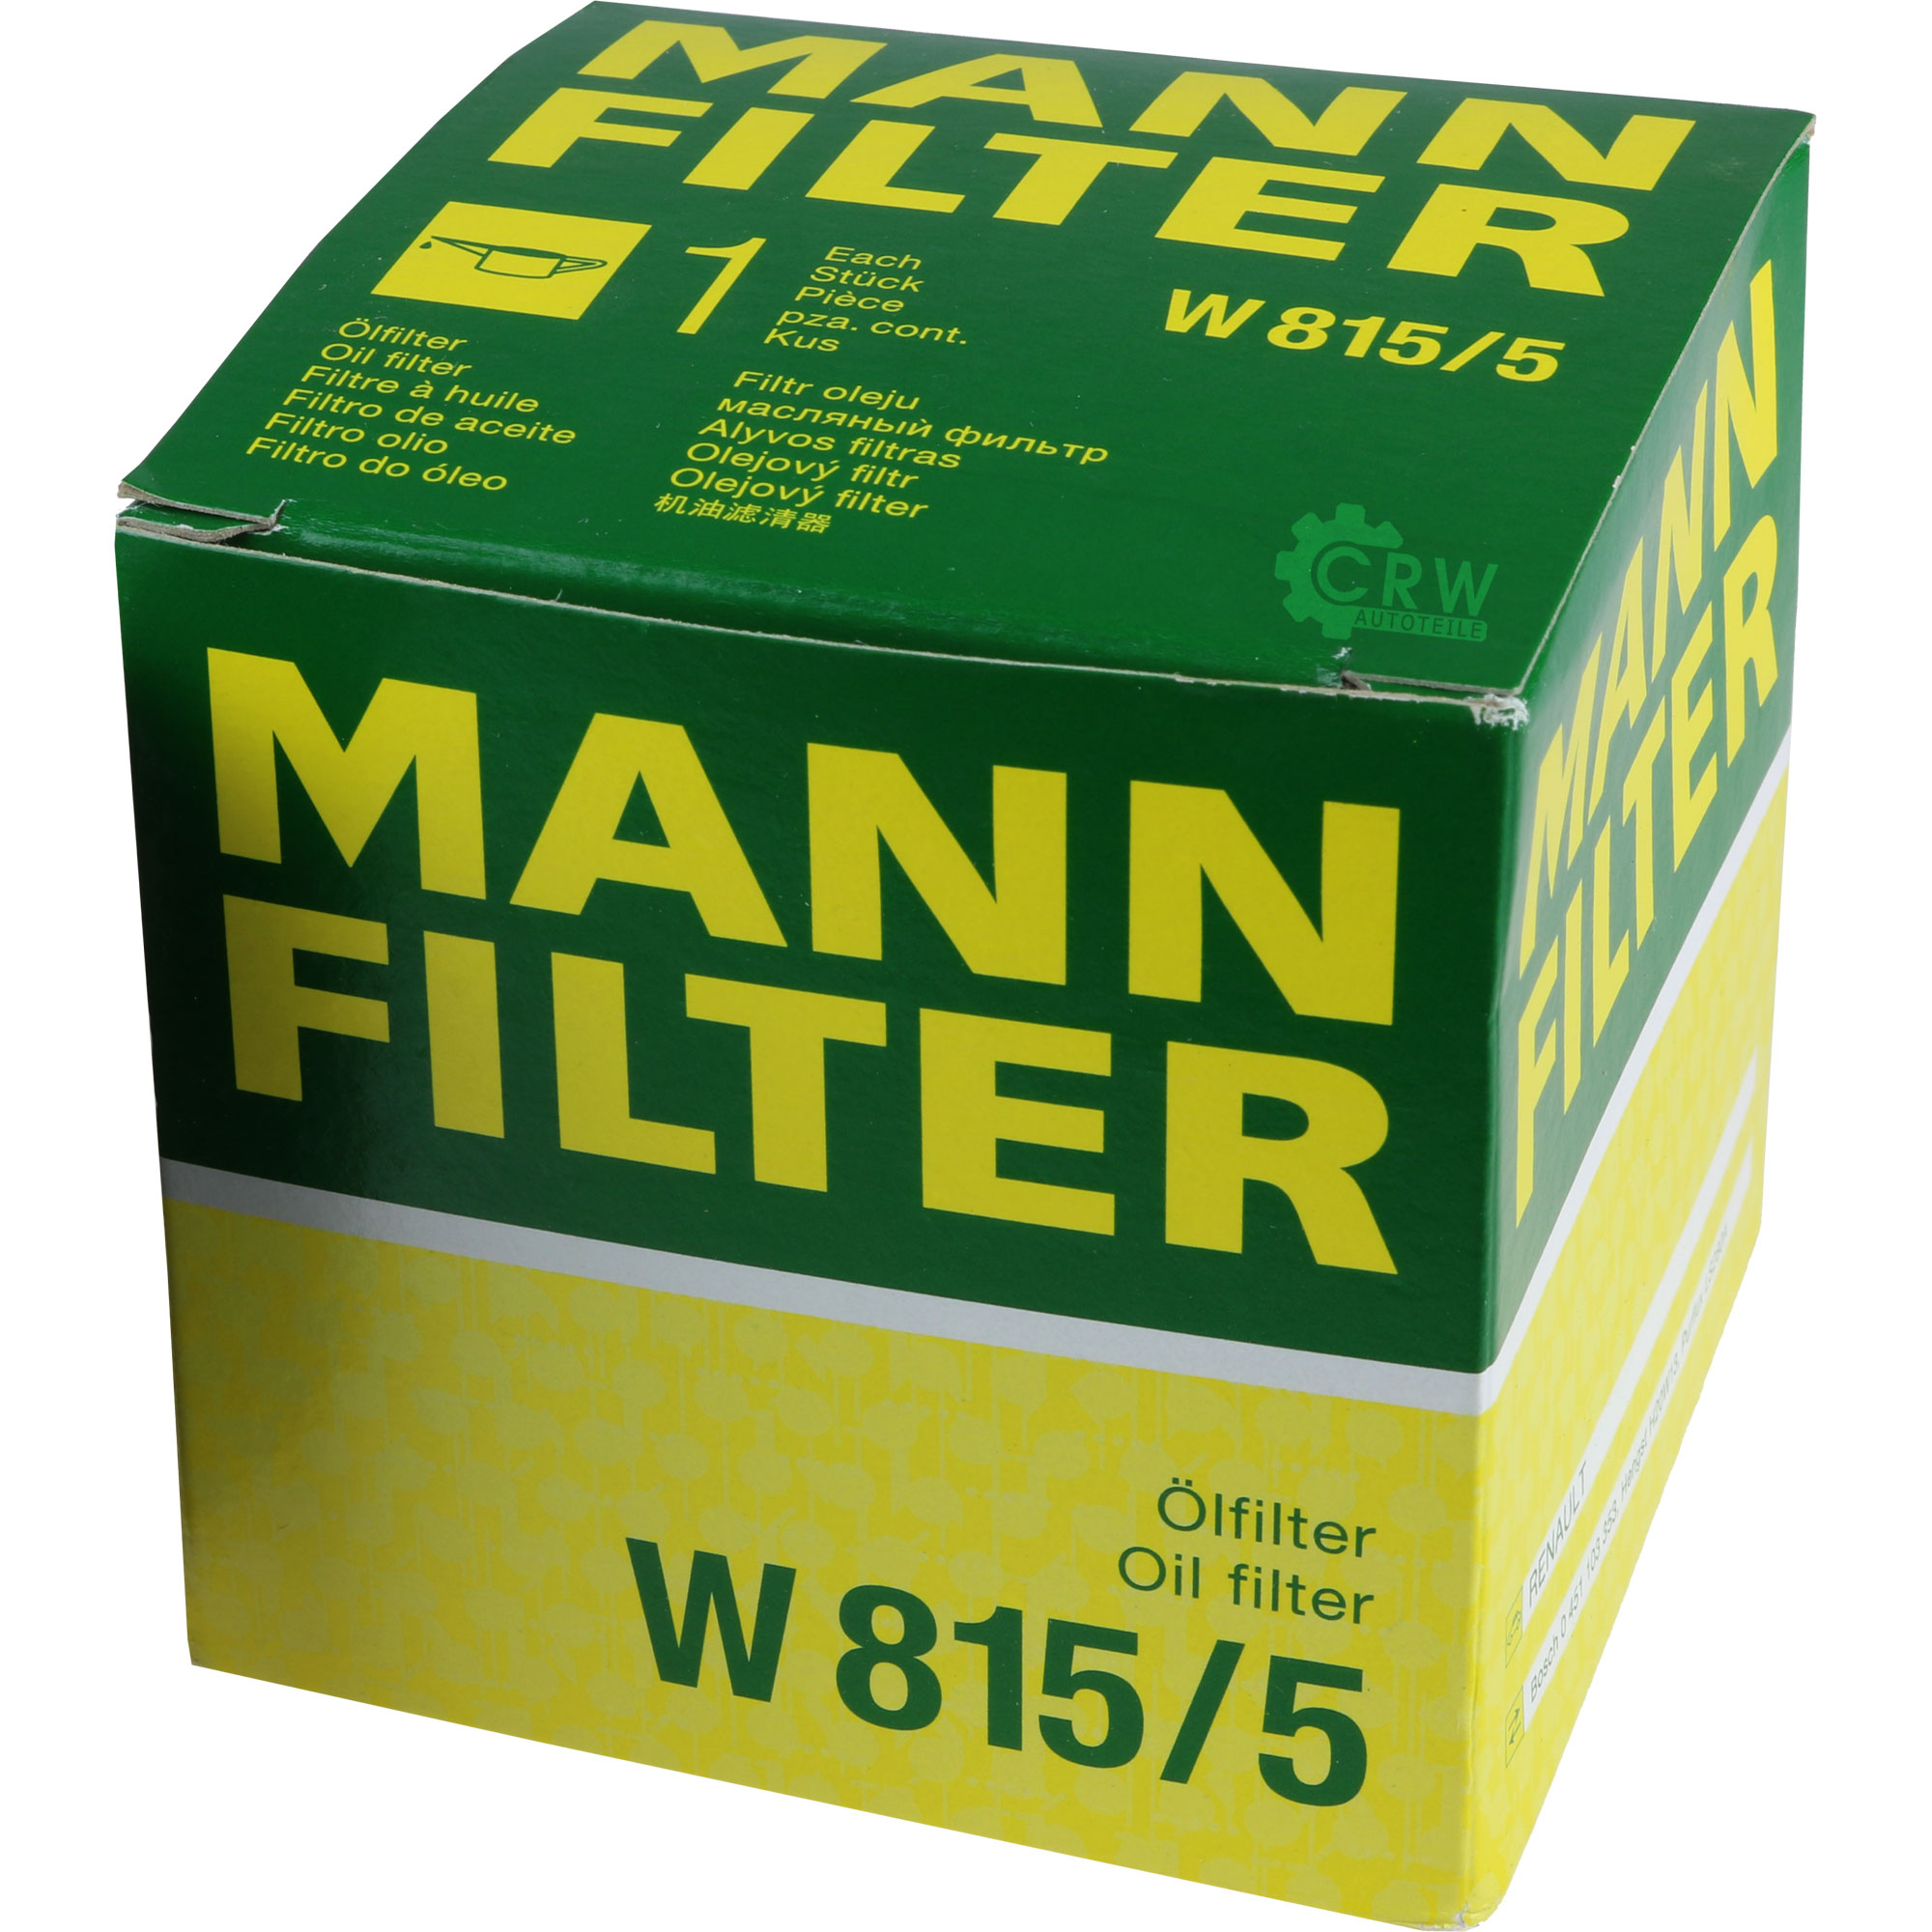 MANN-FILTER Ölfilter W 815/5 Oil Filter